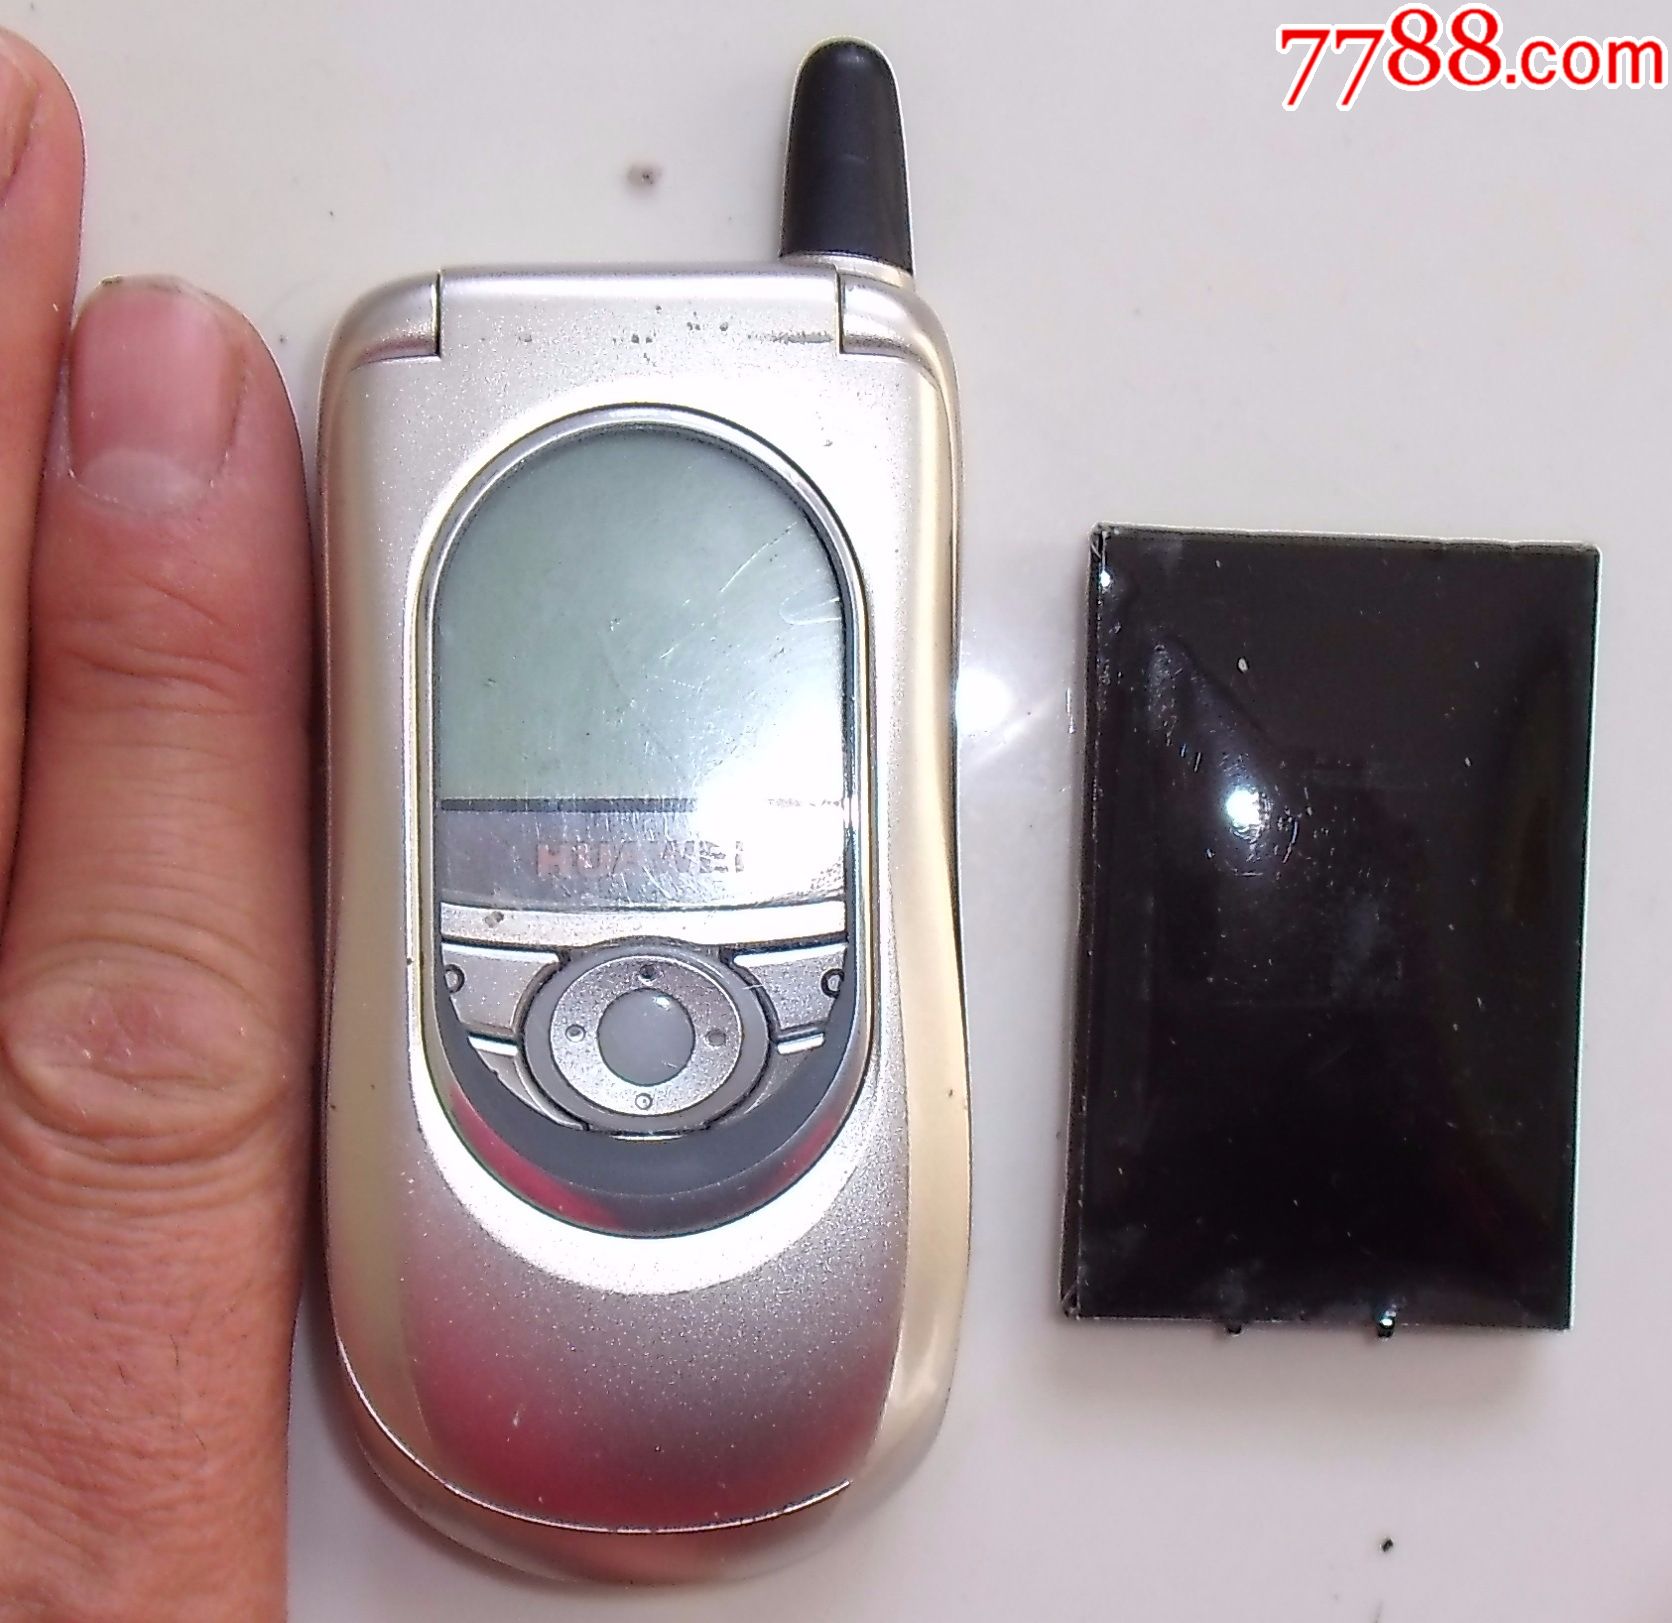 04年中国华为第一部手机a526(小灵通手机,中国骄傲!附